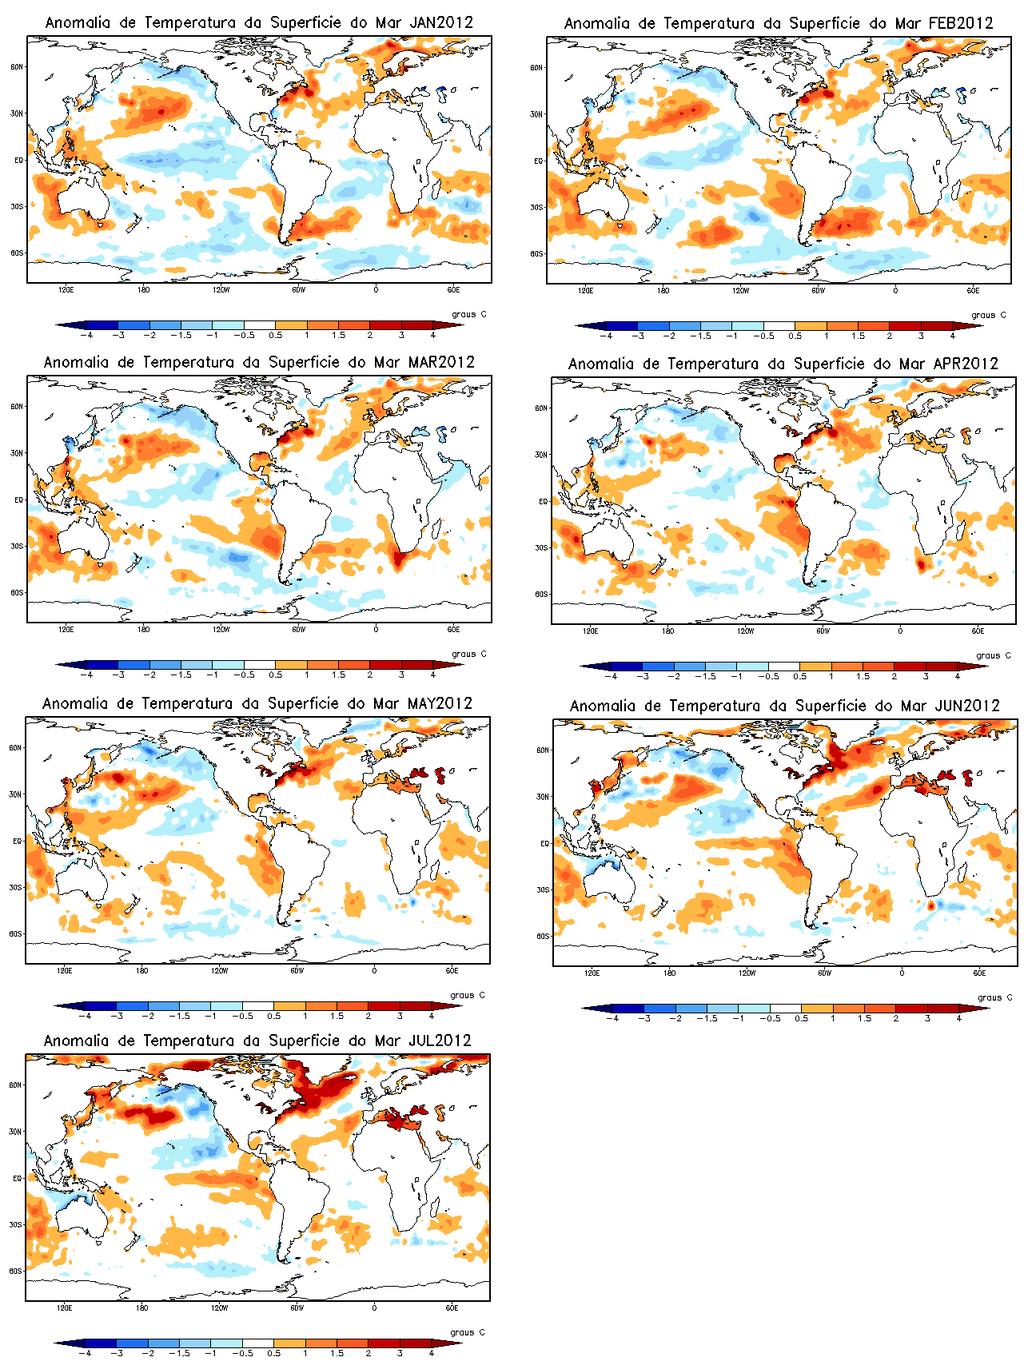 O presente ano de 2012, que não se caracteriza, ainda, como um ano de El Niño, embora esteja caminhando para tal, já apresenta possível desenvolvimento de condições para tal fenômeno.